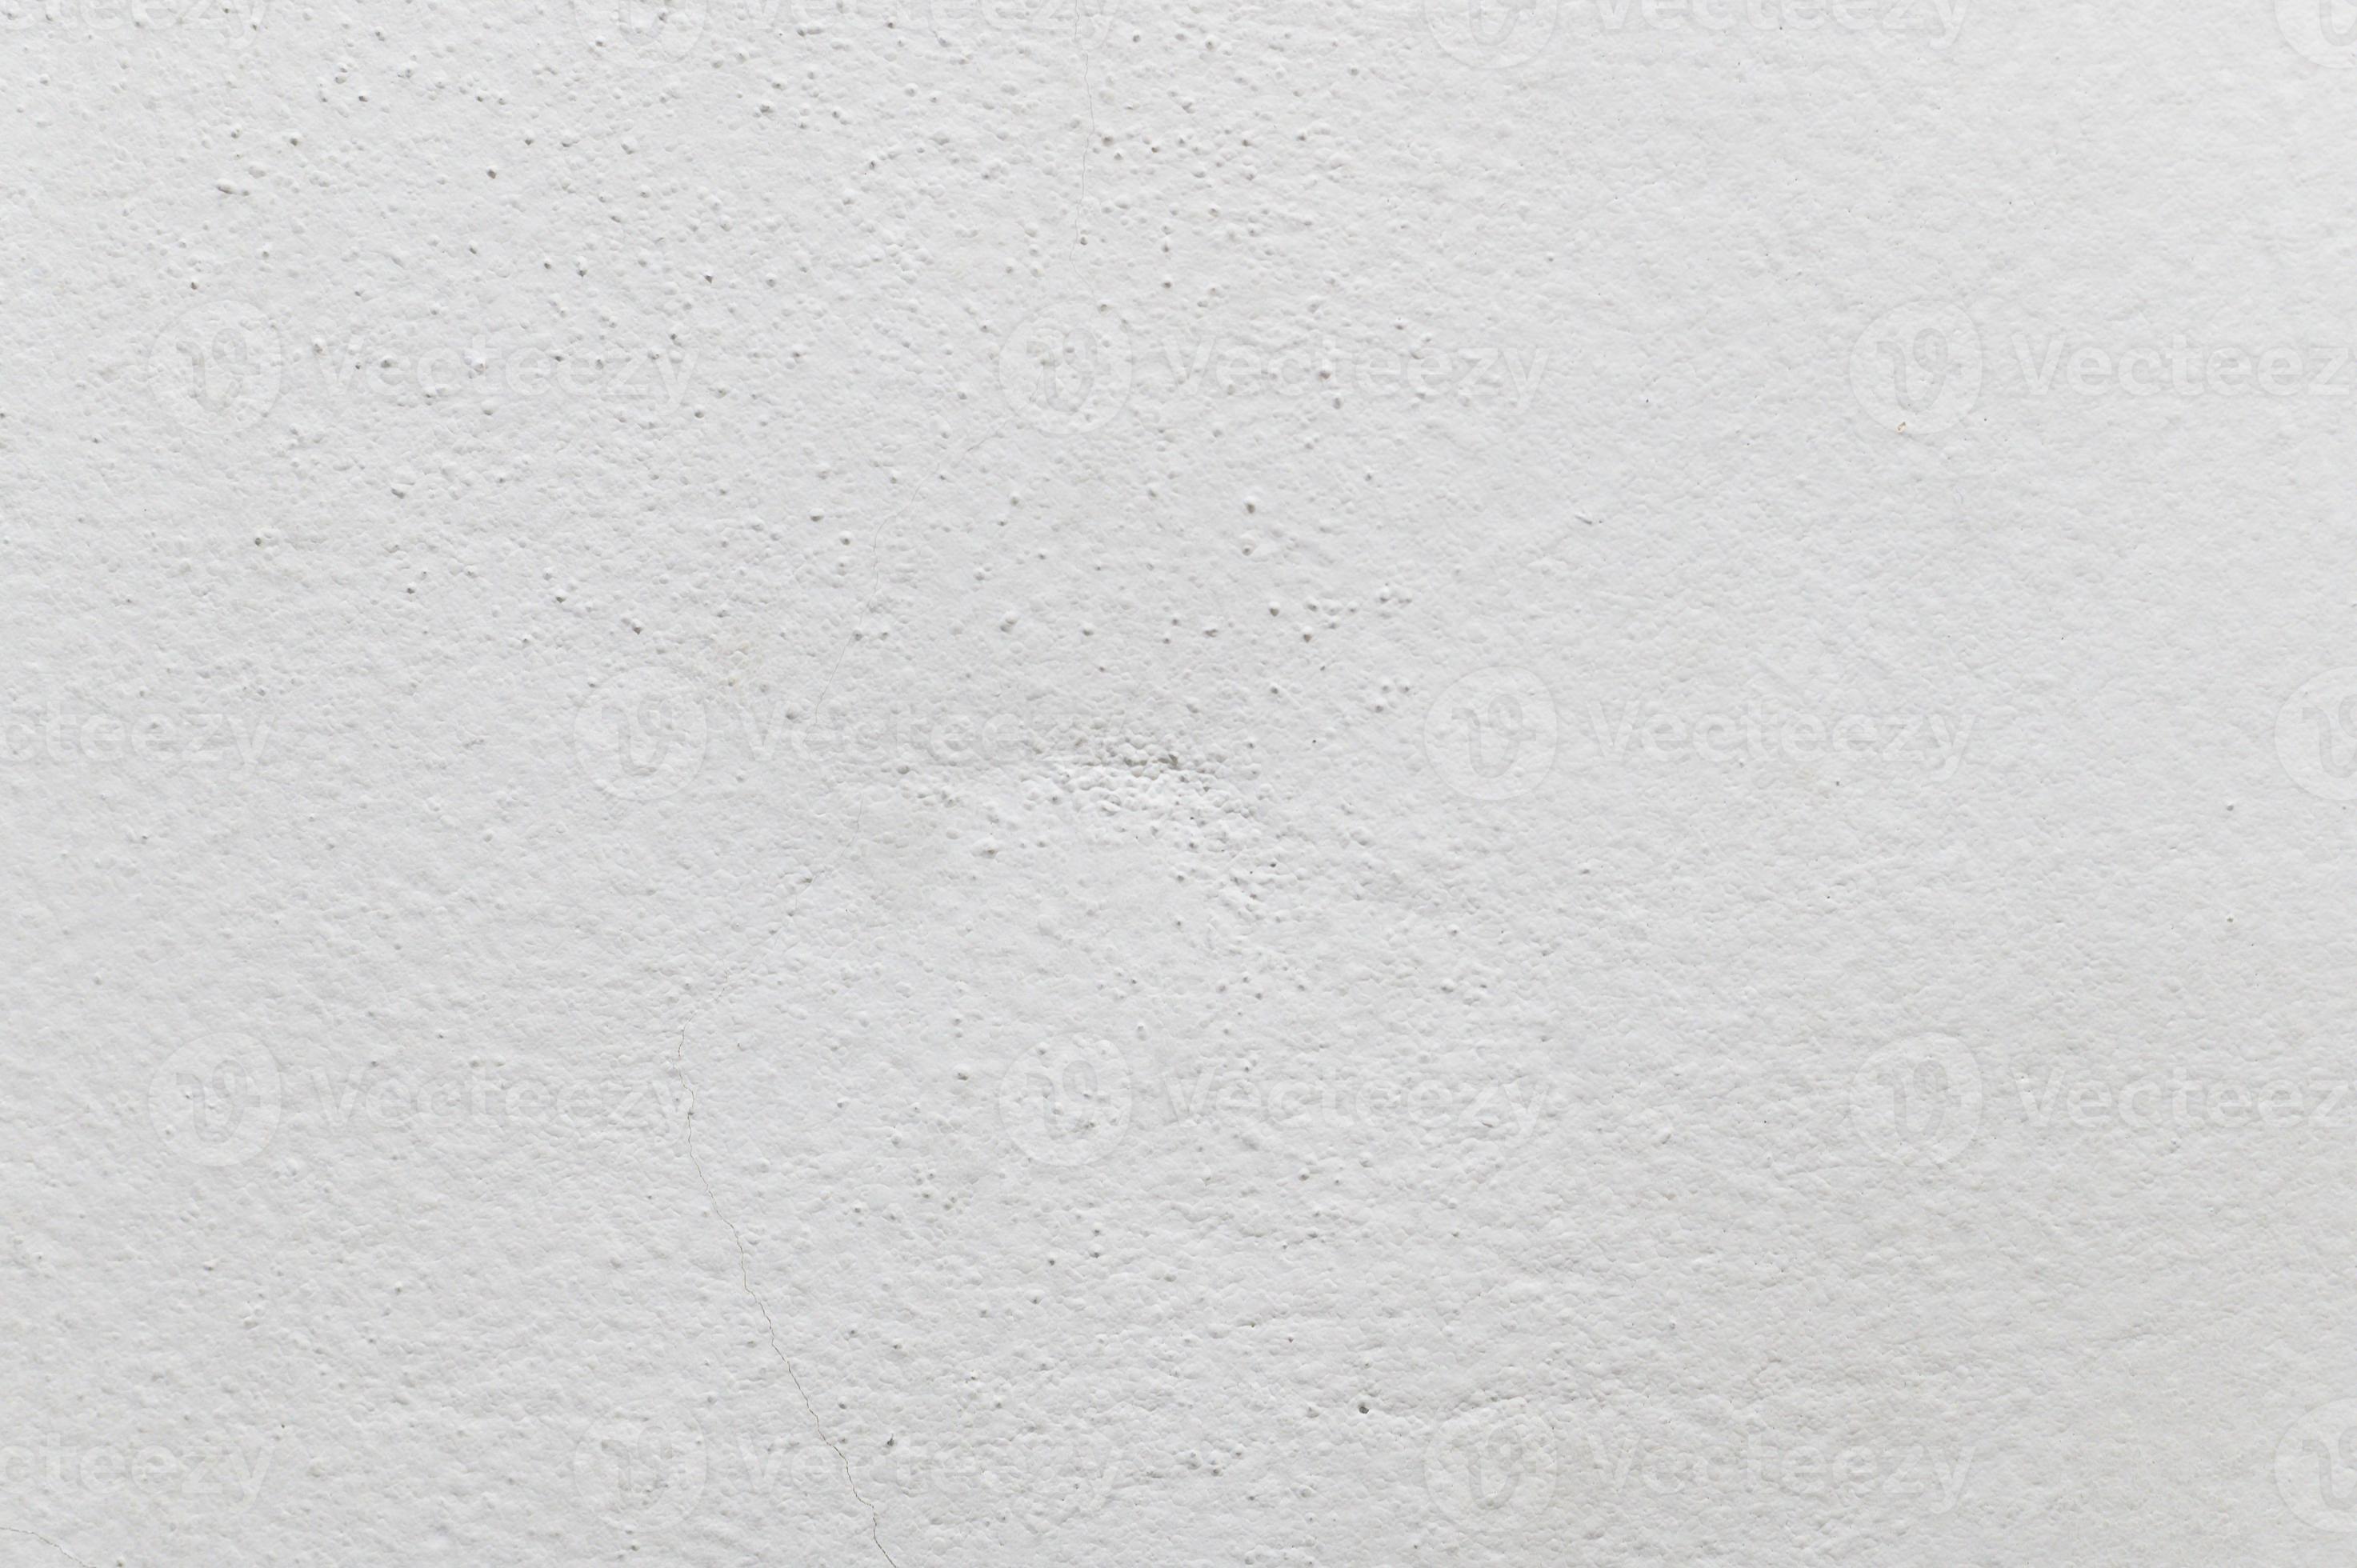 cemento blanco y textura de fondo de la pared de hormigón. concepto interior foto